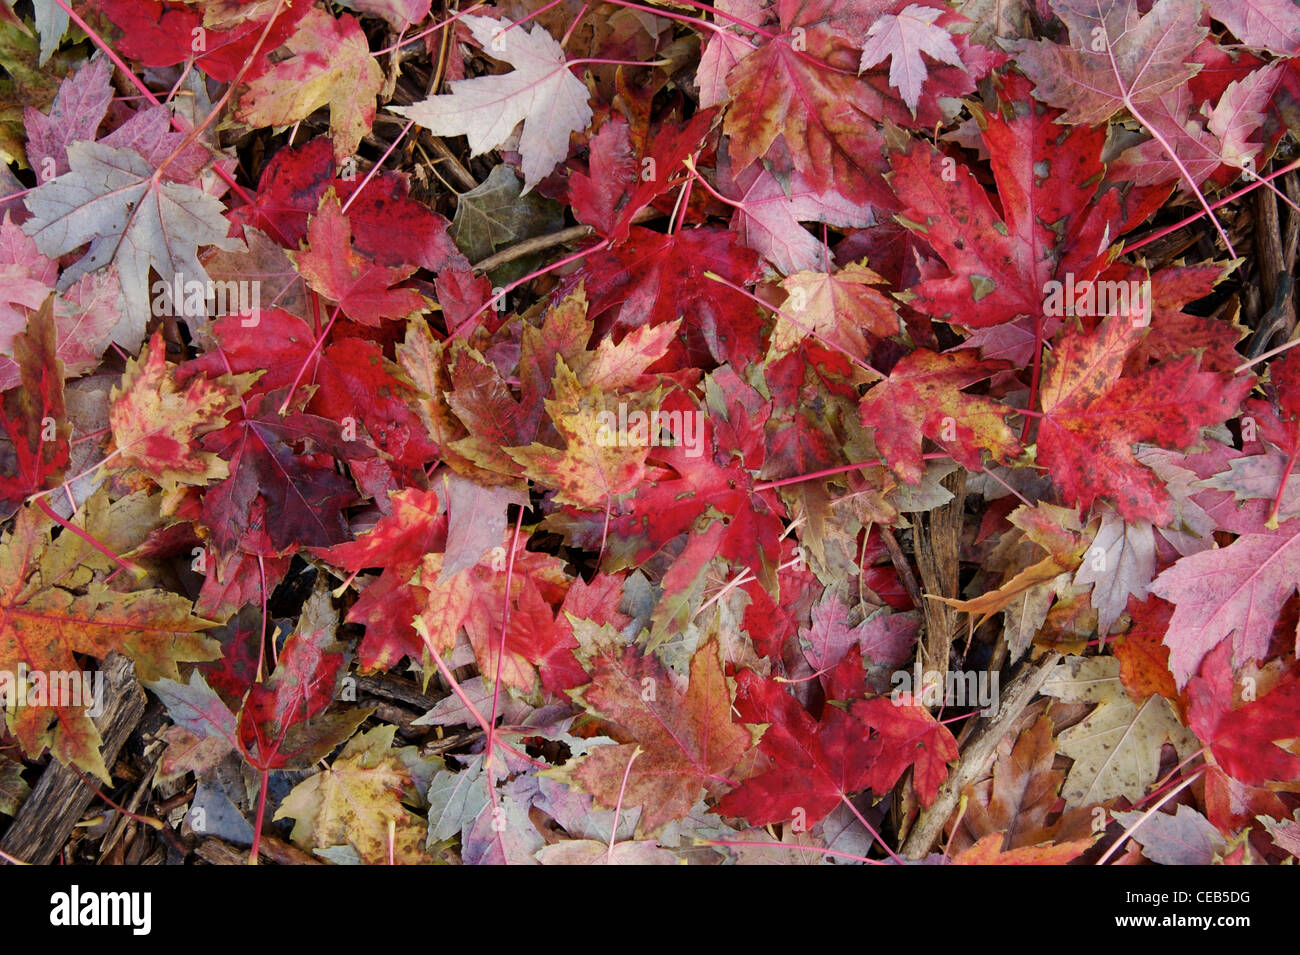 Autumn leaf litter Stock Photo